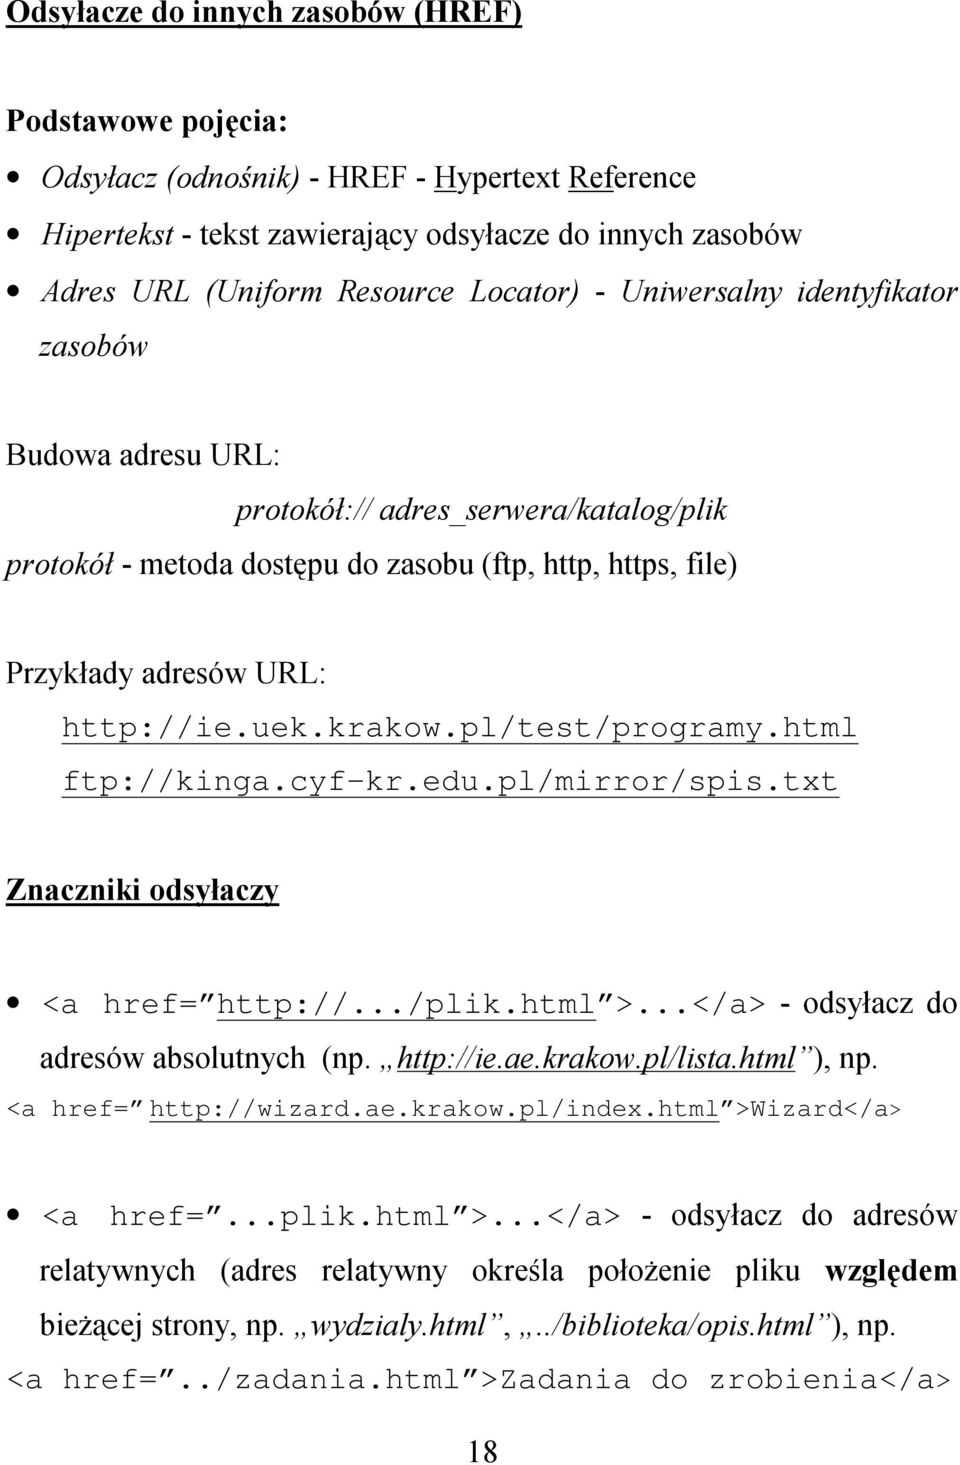 pl/test/programy.html ftp://kinga.cyf-kr.edu.pl/mirror/spis.txt Znaczniki odsyłaczy <a href= http://.../plik.html >...</a> - odsyłacz do adresów absolutnych (np. http://ie.ae.krakow.pl/lista.